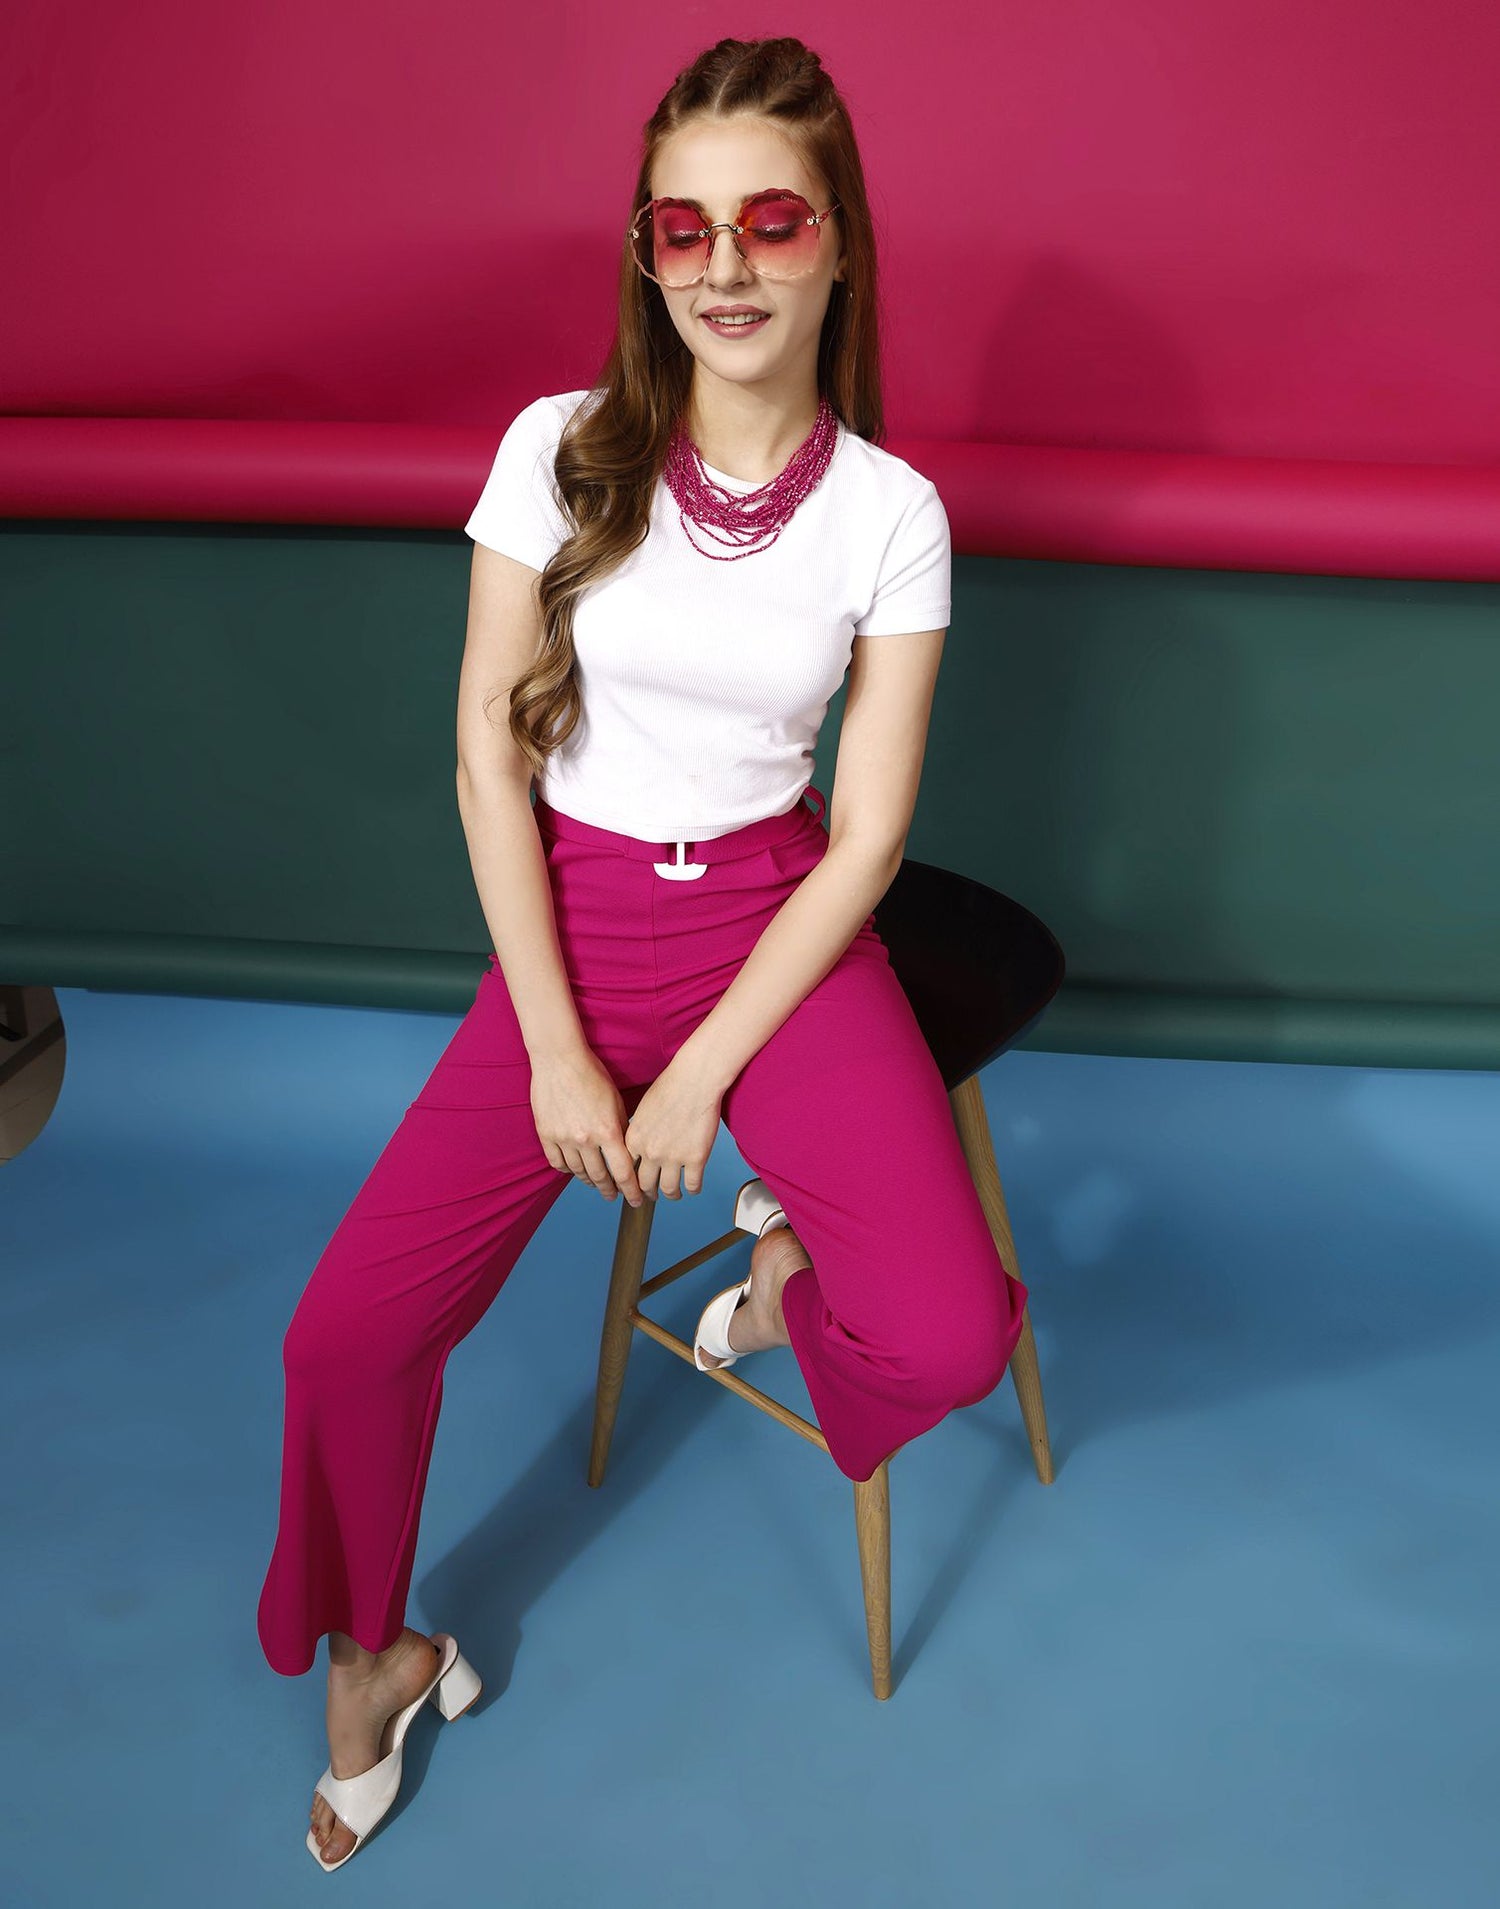 Pink Flared Trouser | Leemboodi